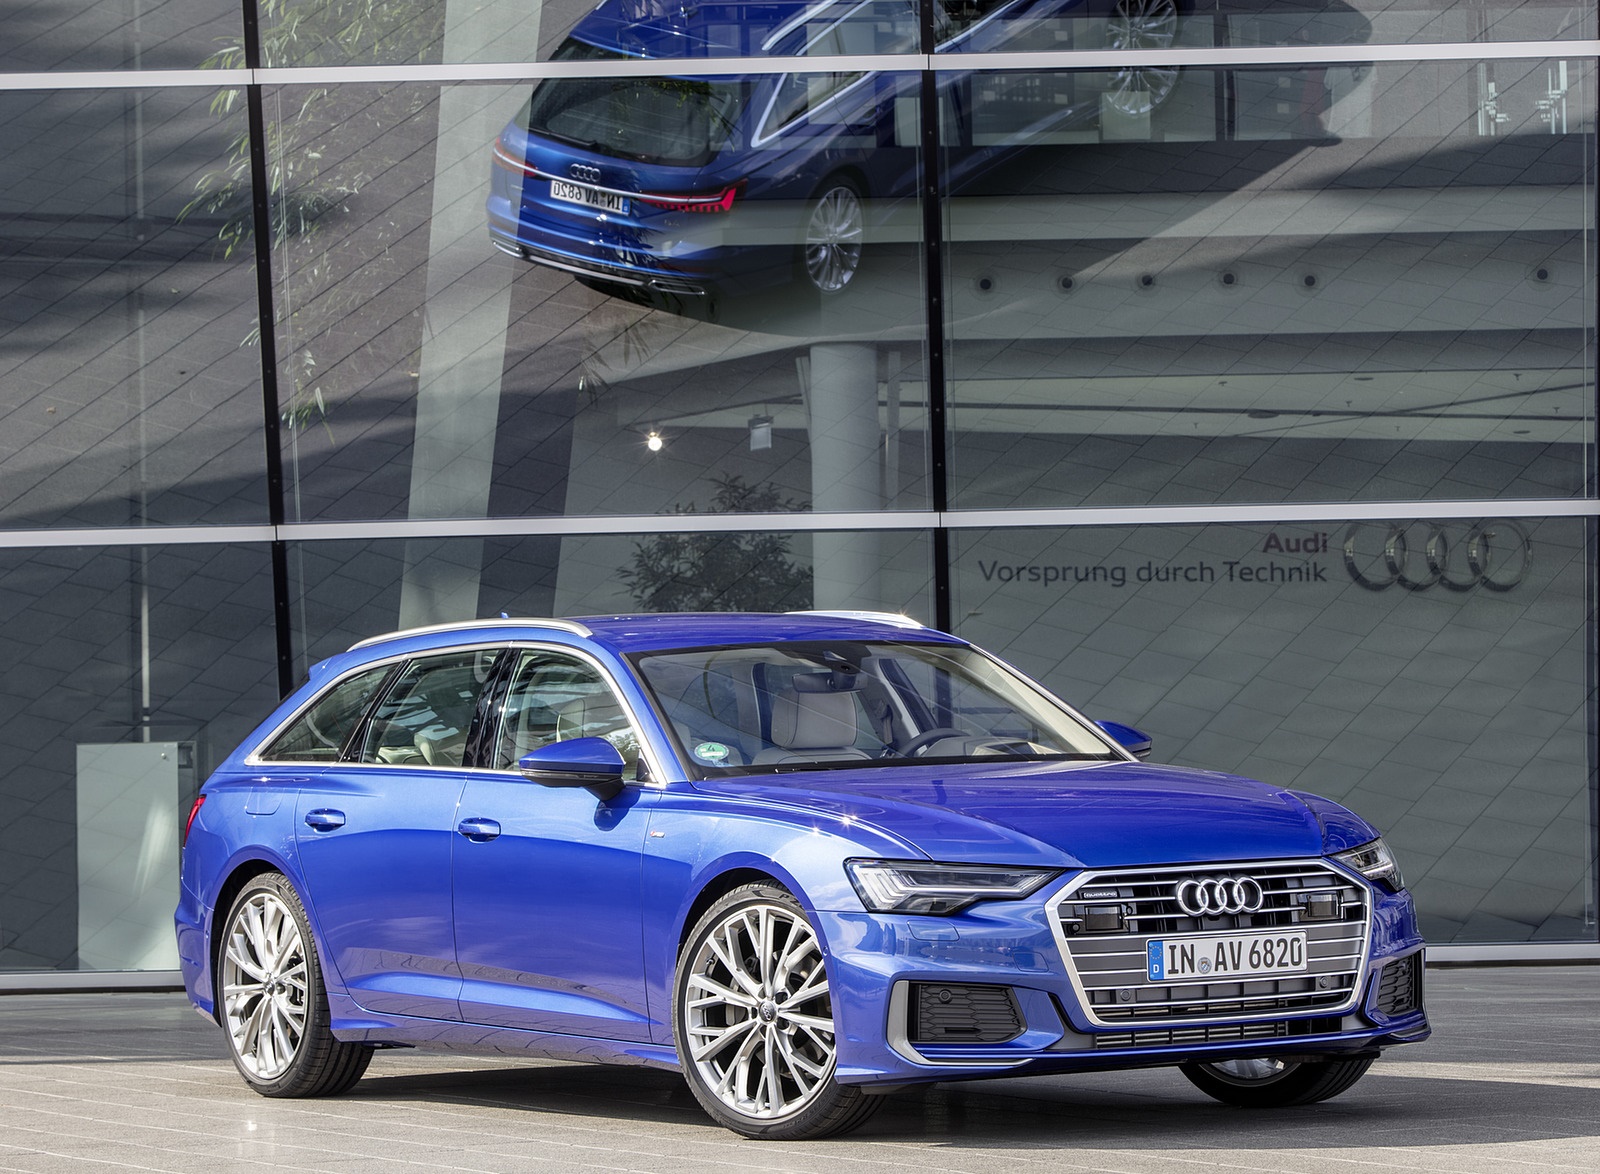 2019 Audi A6 Avant (Color: Sepang Blue) Front Three-Quarter Wallpapers #44 of 86